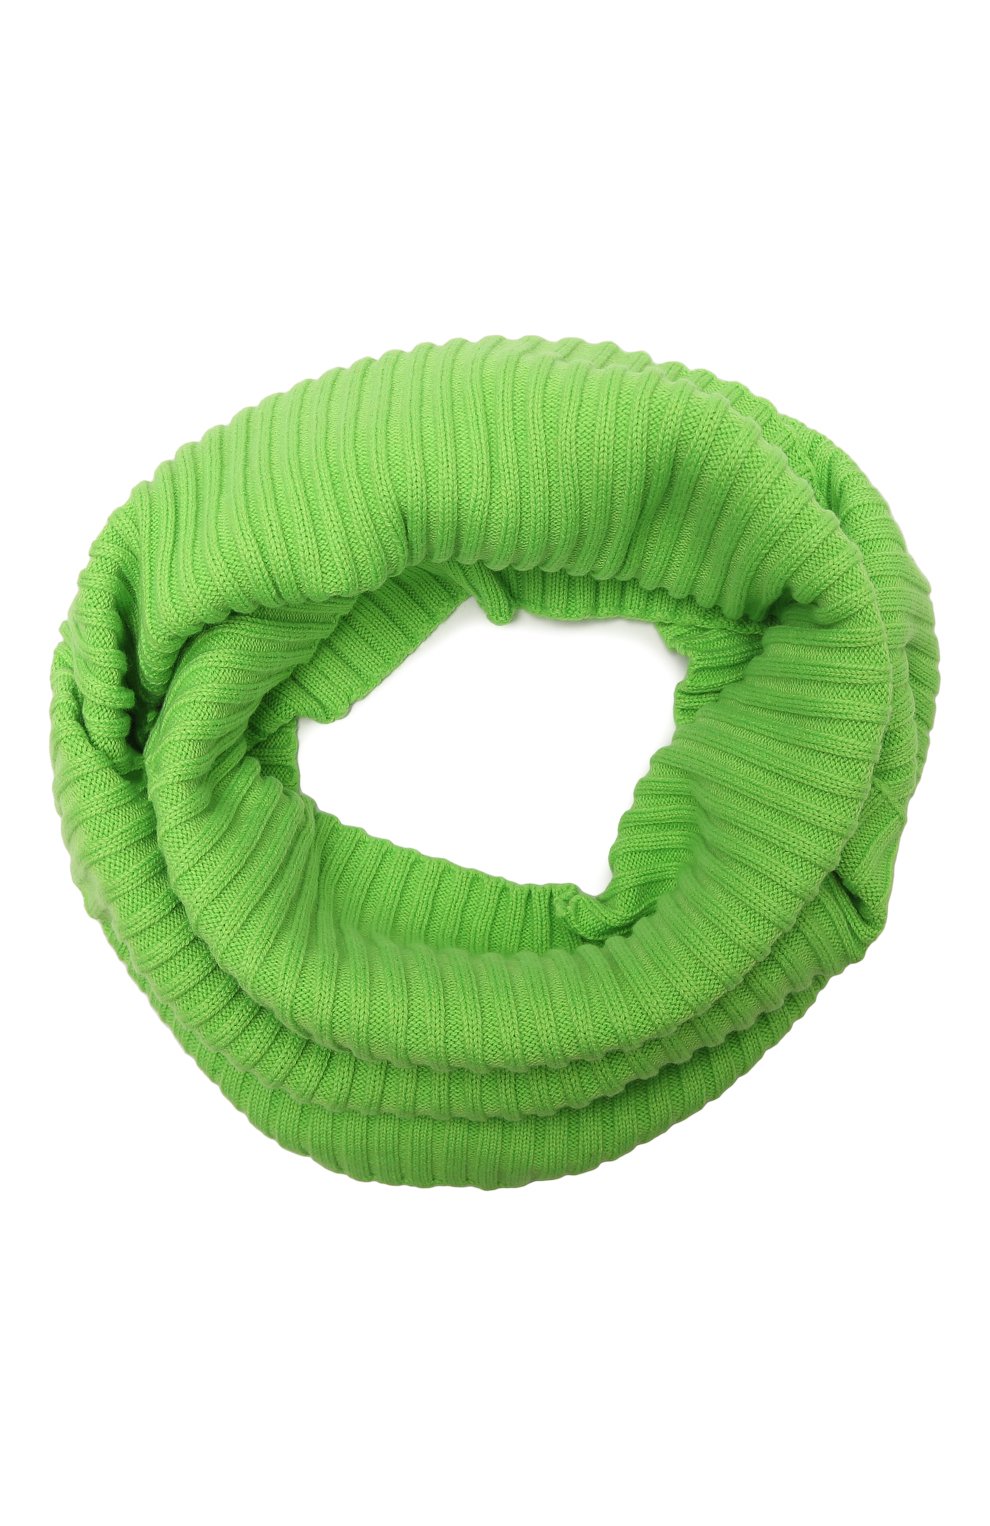 Детский шарф-снуд из шерсти и хлопка DIESEL зеленого цвета, арт. J00221-KYASM | Фото 1 (Материал: Текстиль, Шерсть, Хлопок)